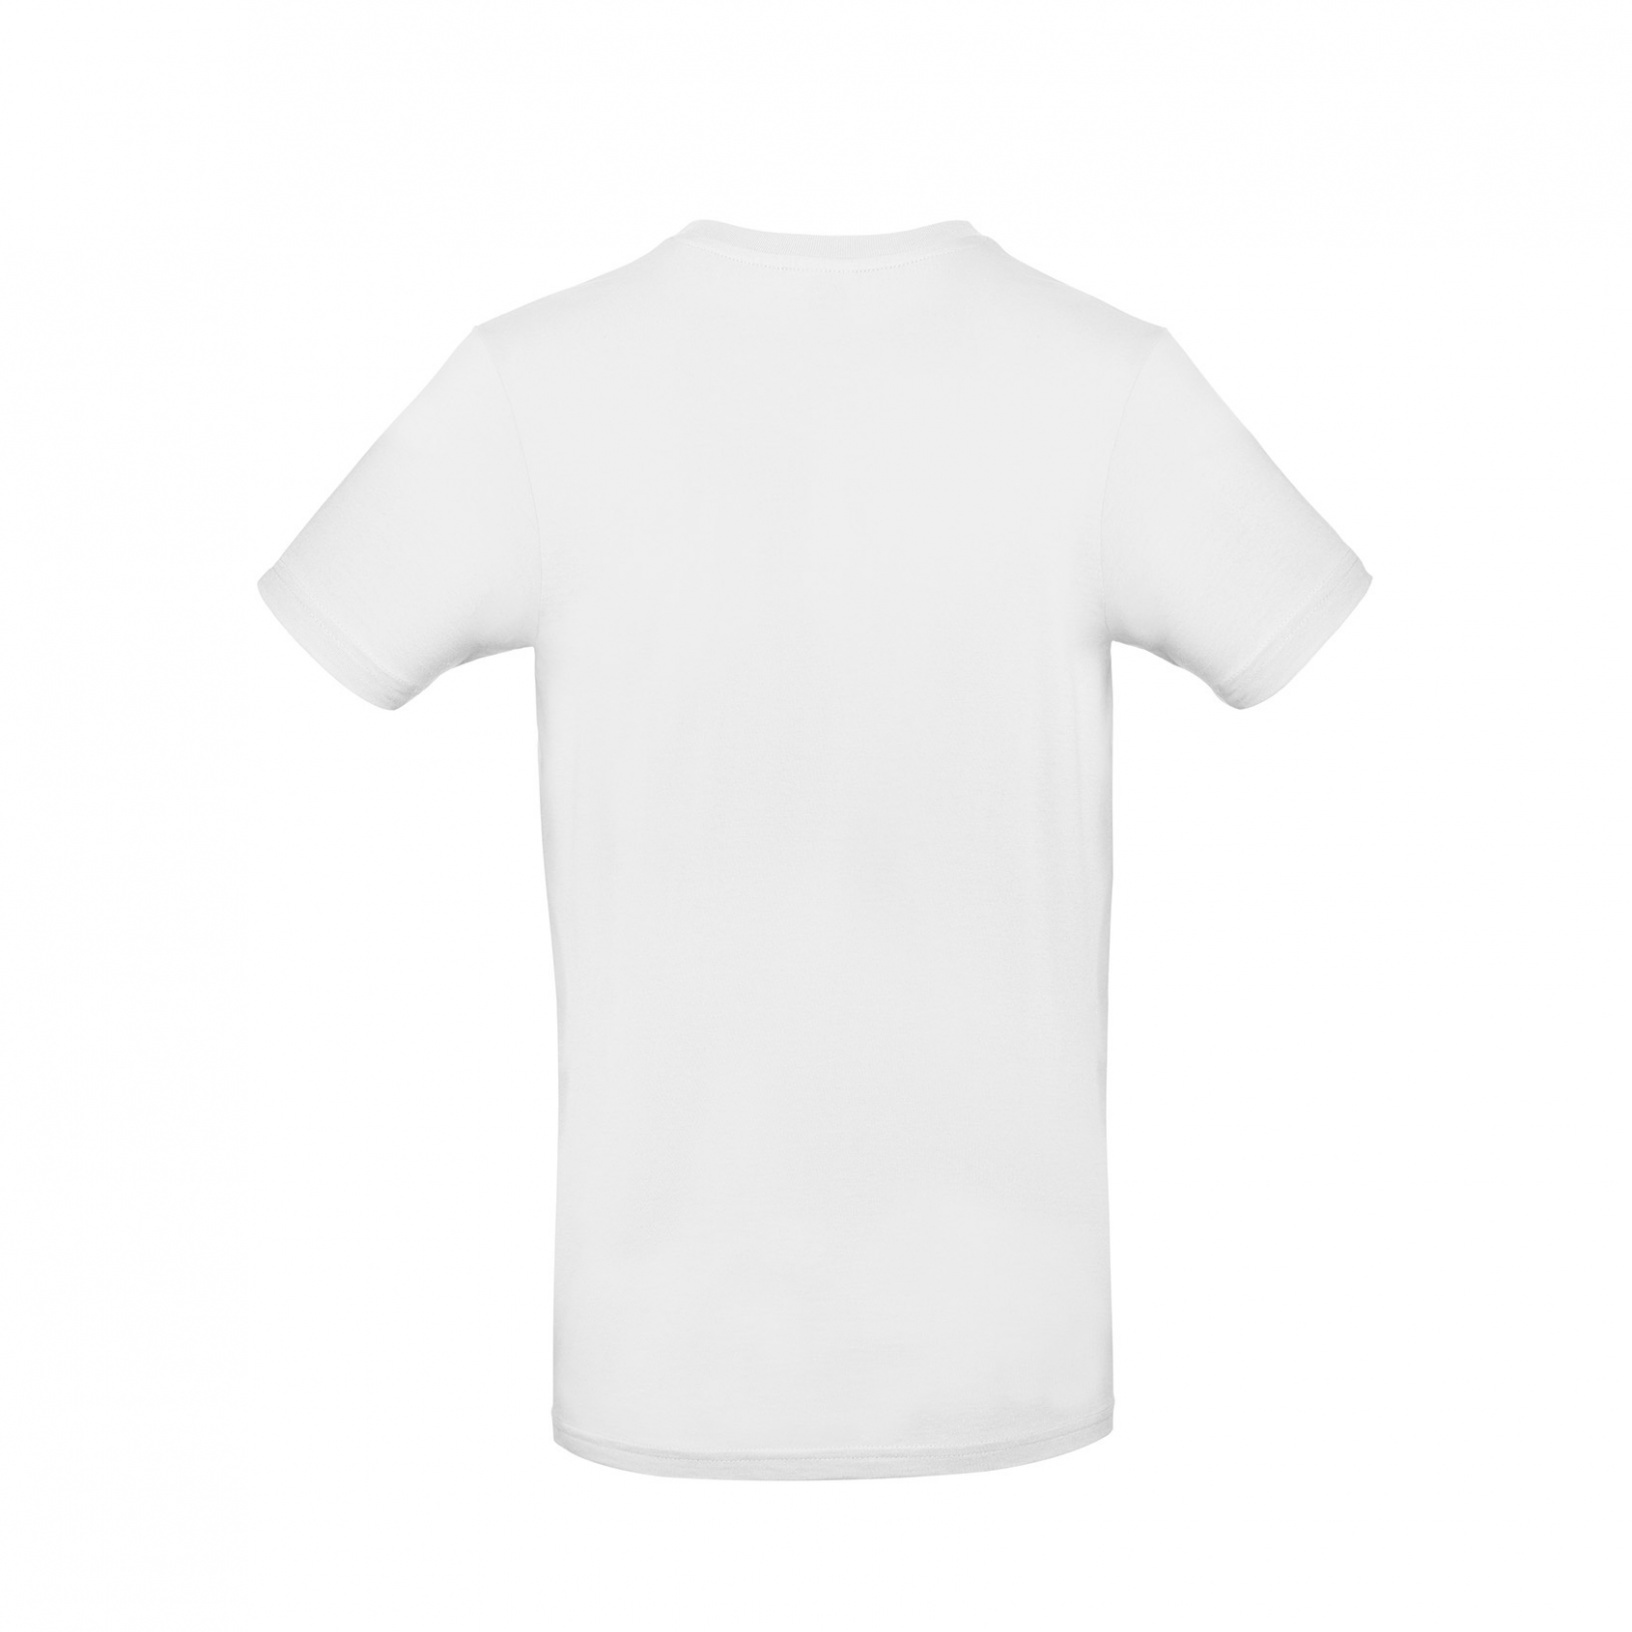 B&C #E190 Short-sleeved T-shirt - Shirtprinz Onlineshop